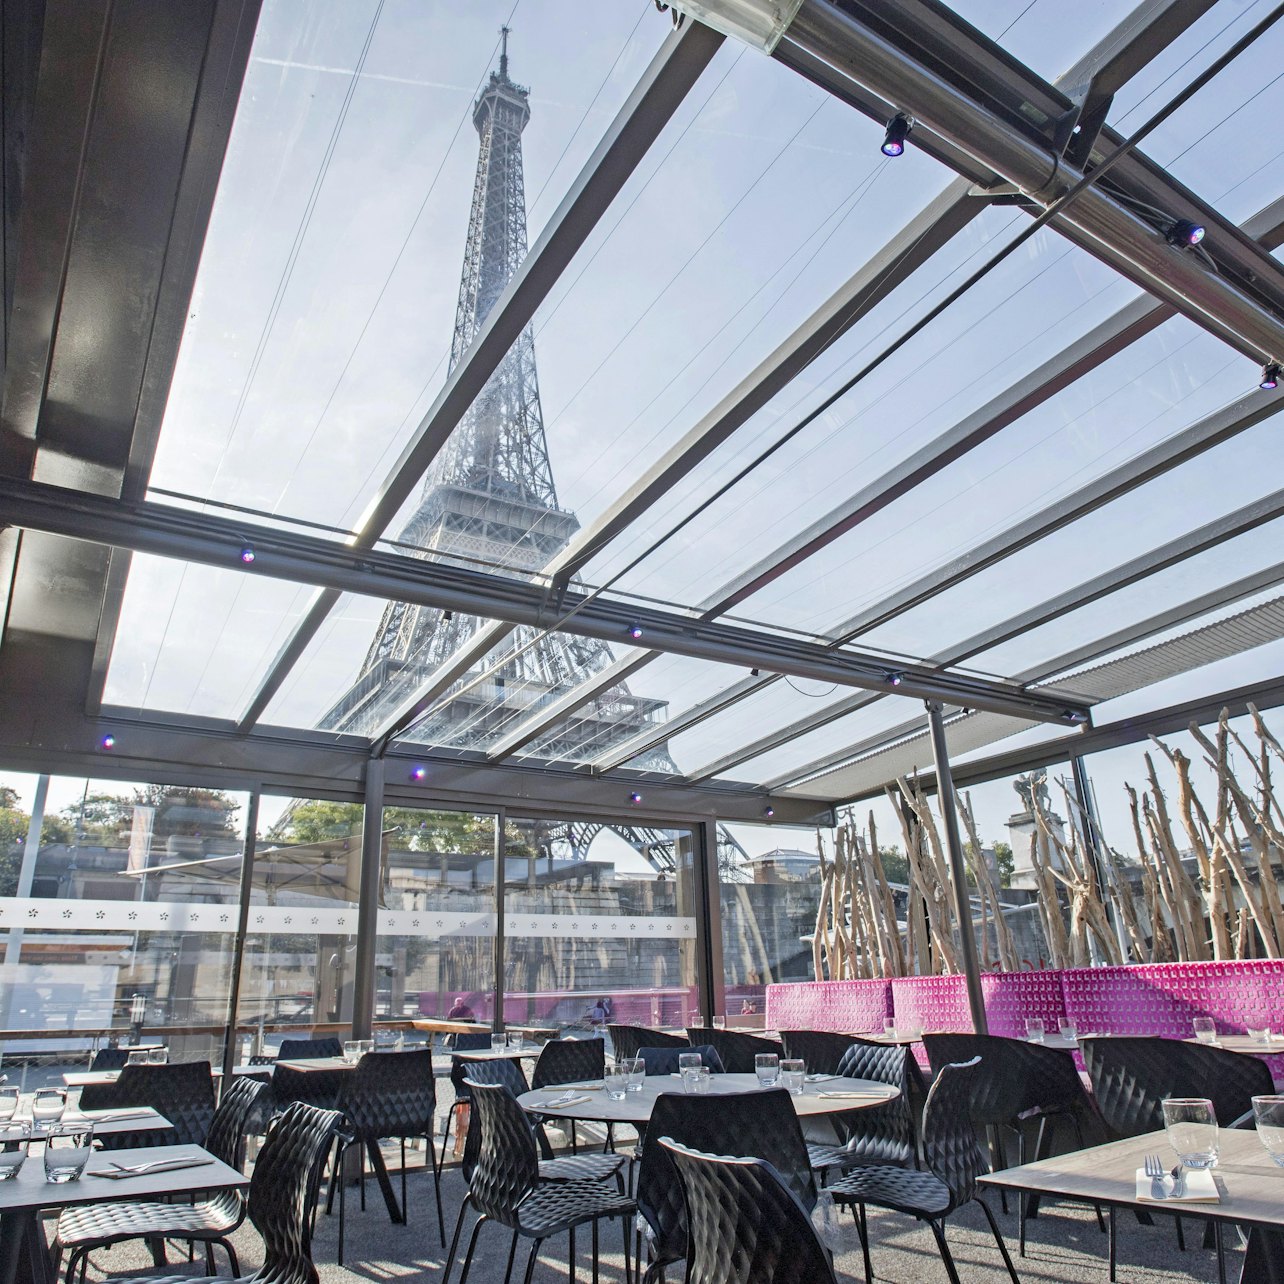 Crucero turístico por el Sena + Cena en Le Bistro Parisien - Alojamientos en Paris